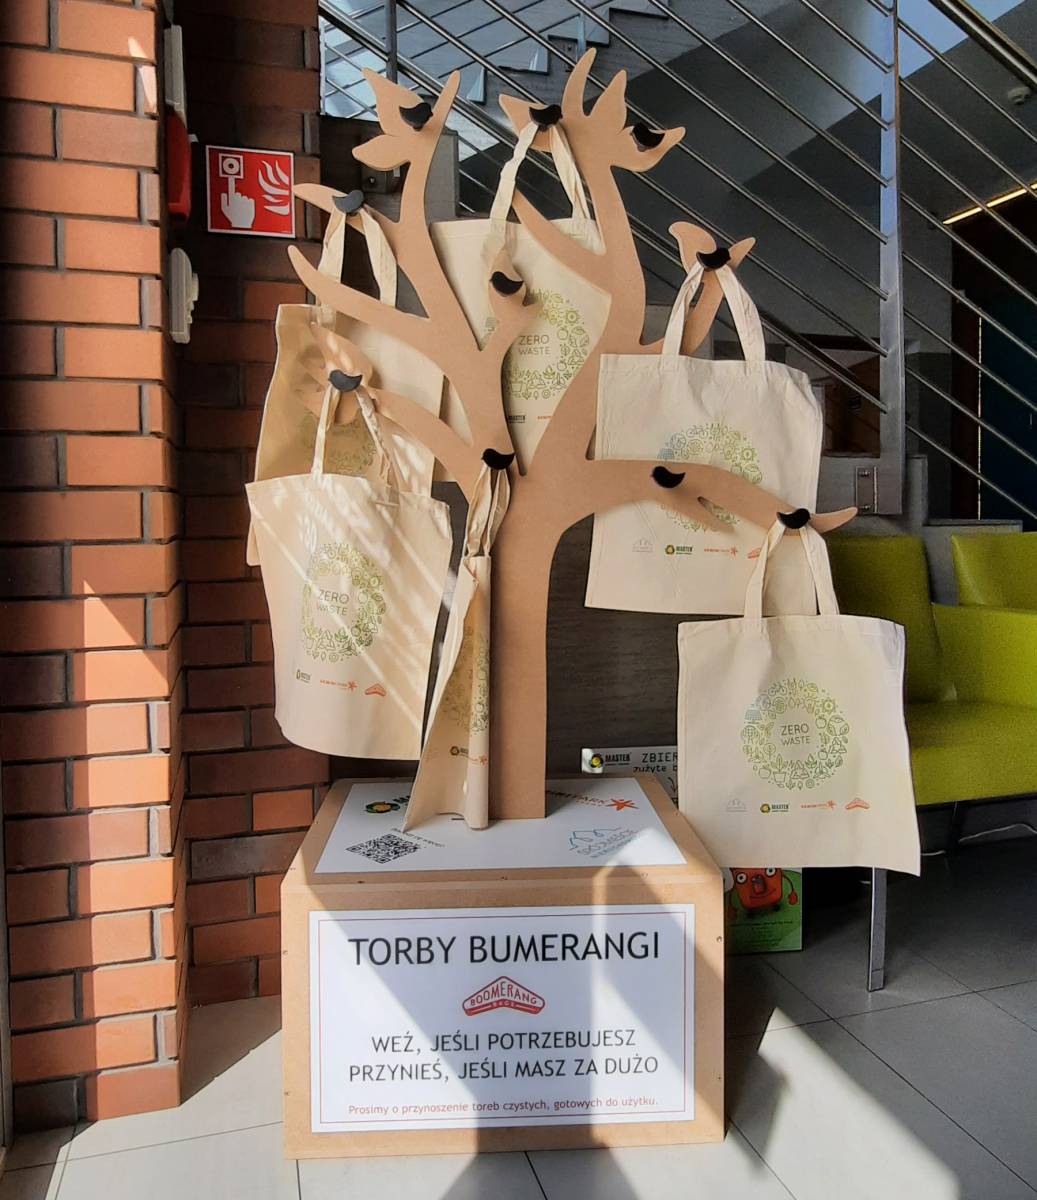 Torby bumerangi (materiałowe jasne torby) na wieszaku imitującym drzewo